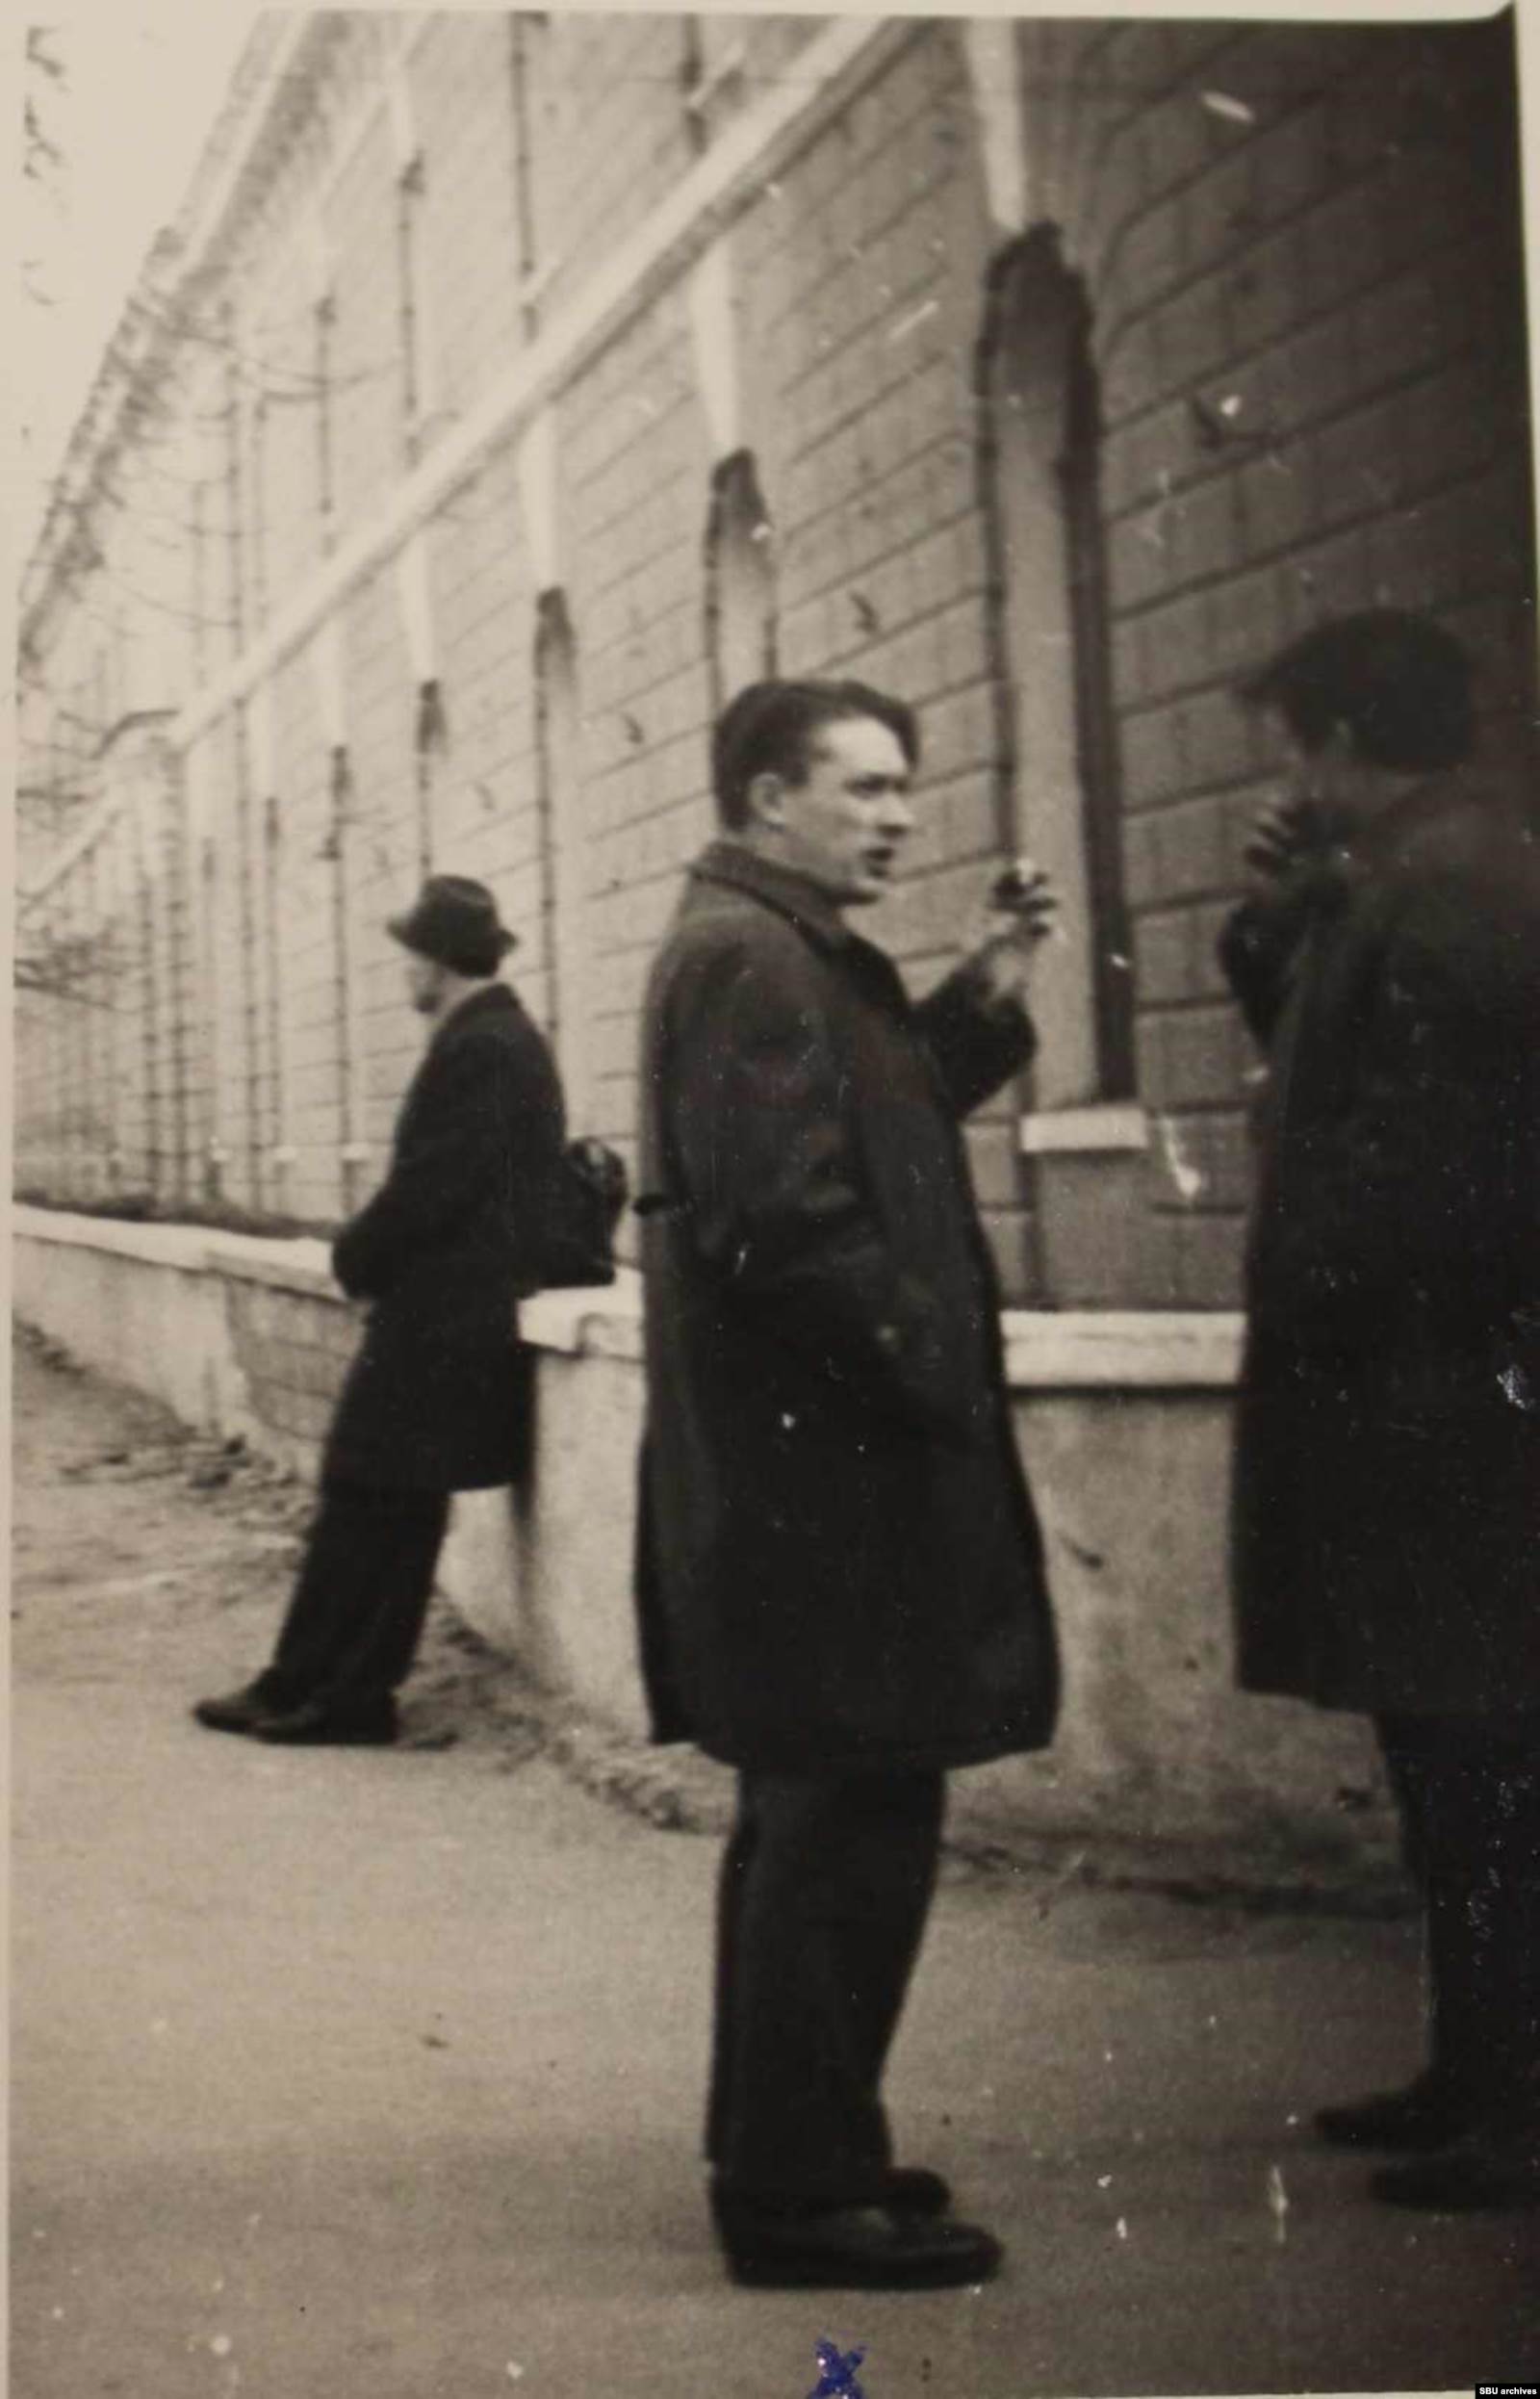  Пушкарь с коллегой возле проходной «Арсенала-2». Фото КГБ, сделанное скрытой камерой. Из оперативного дела